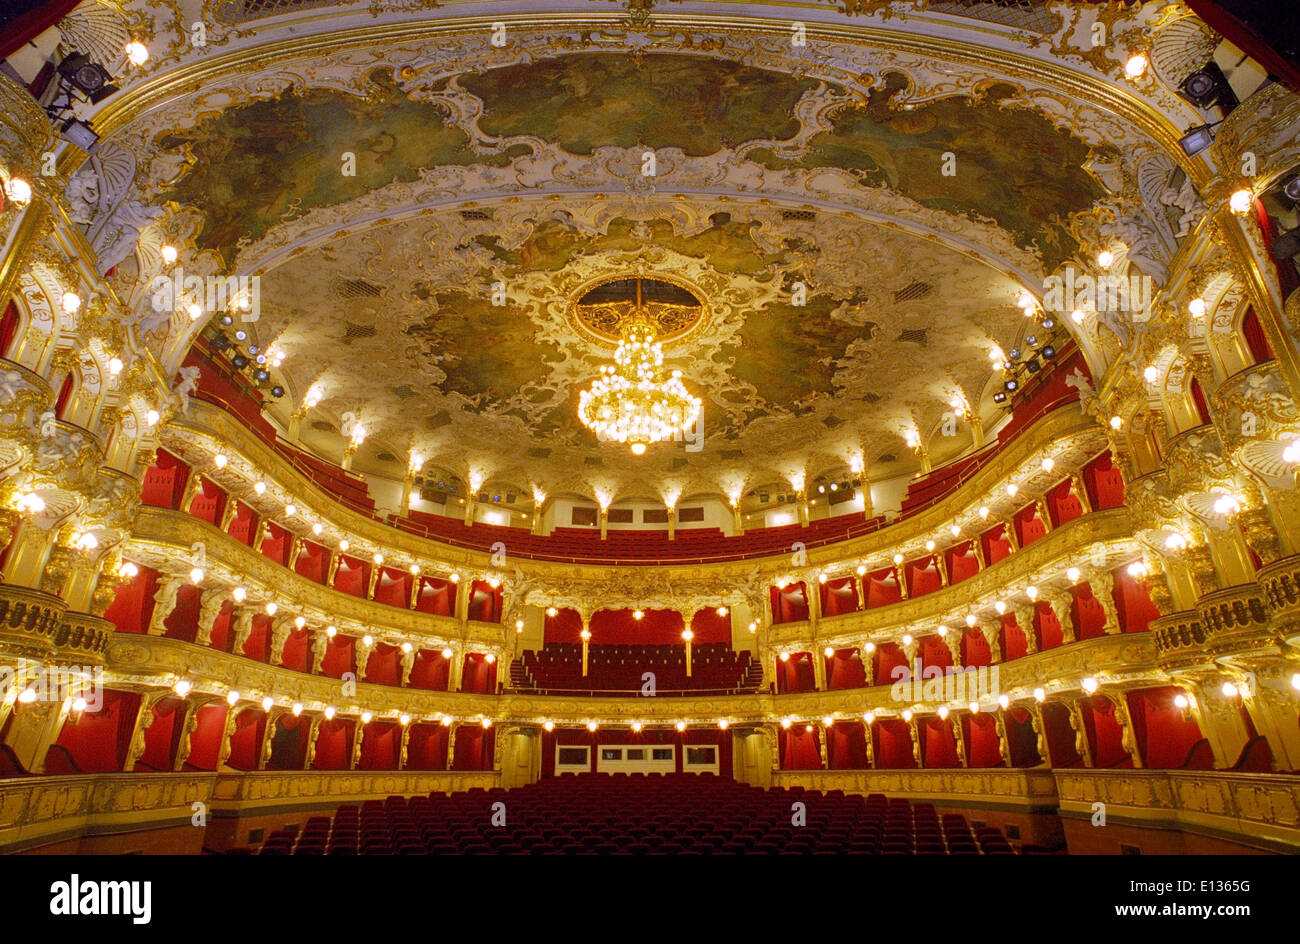 Opéra NATIONAL DE PRAGUE L'intérieur vaste auditorium Opéra National de Prague vue depuis la scène Prague Praha République Tchèque Banque D'Images